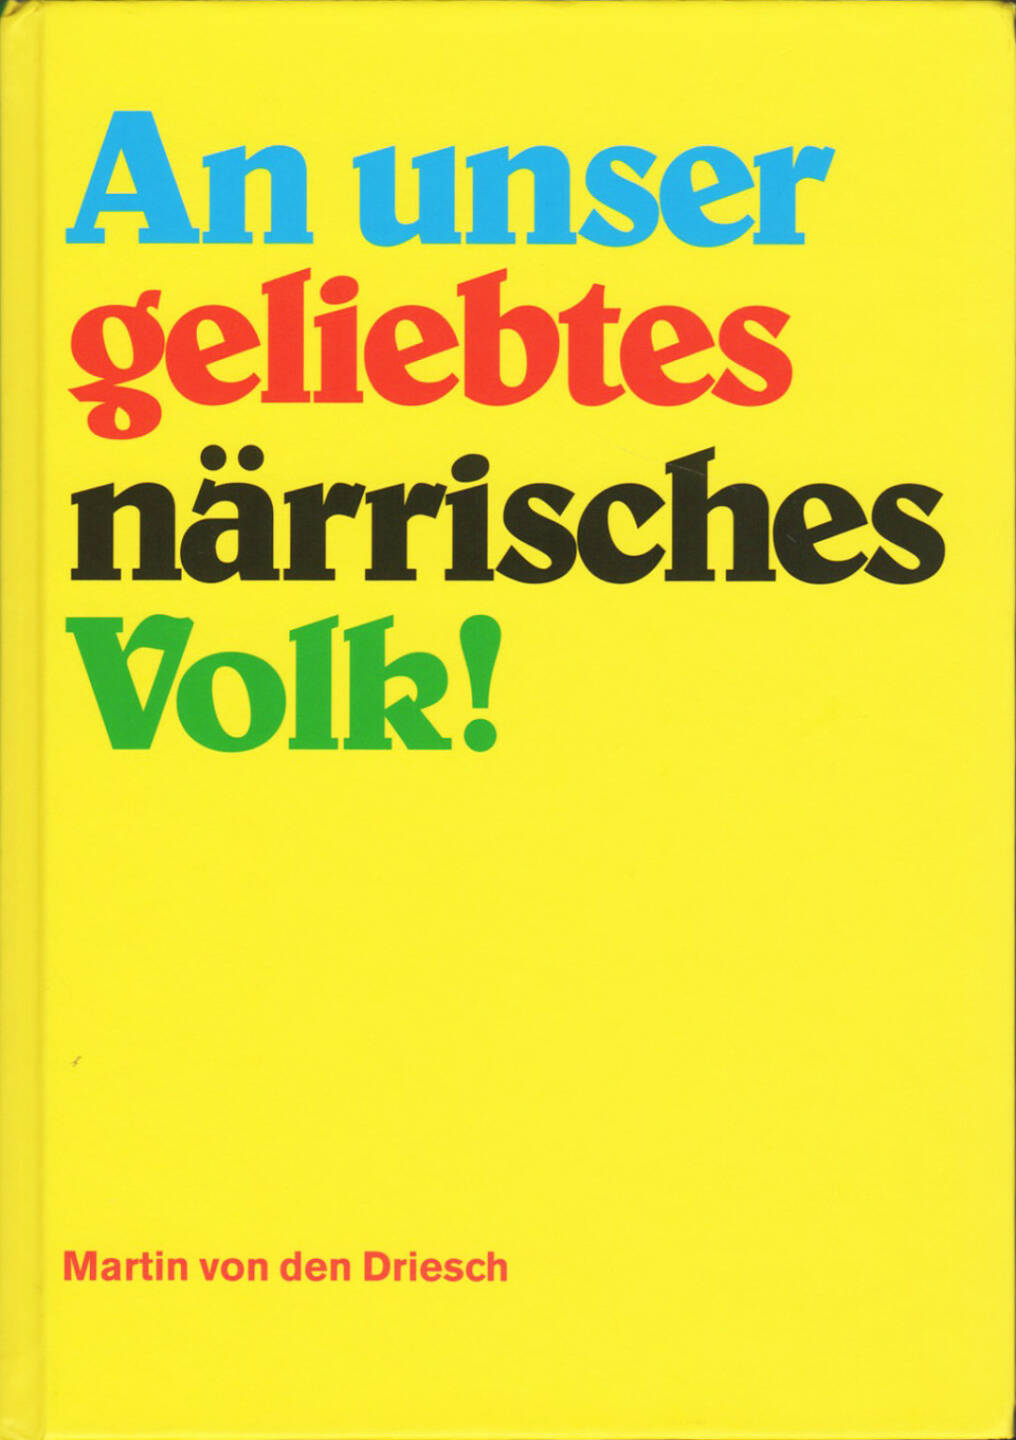 Martin von den Driesch - An unser geliebtes närrisches Volk!, Self published 2015, Cover - http://josefchladek.com/book/martin_von_den_driesch_-_an_unser_geliebtes_narrisches_volk